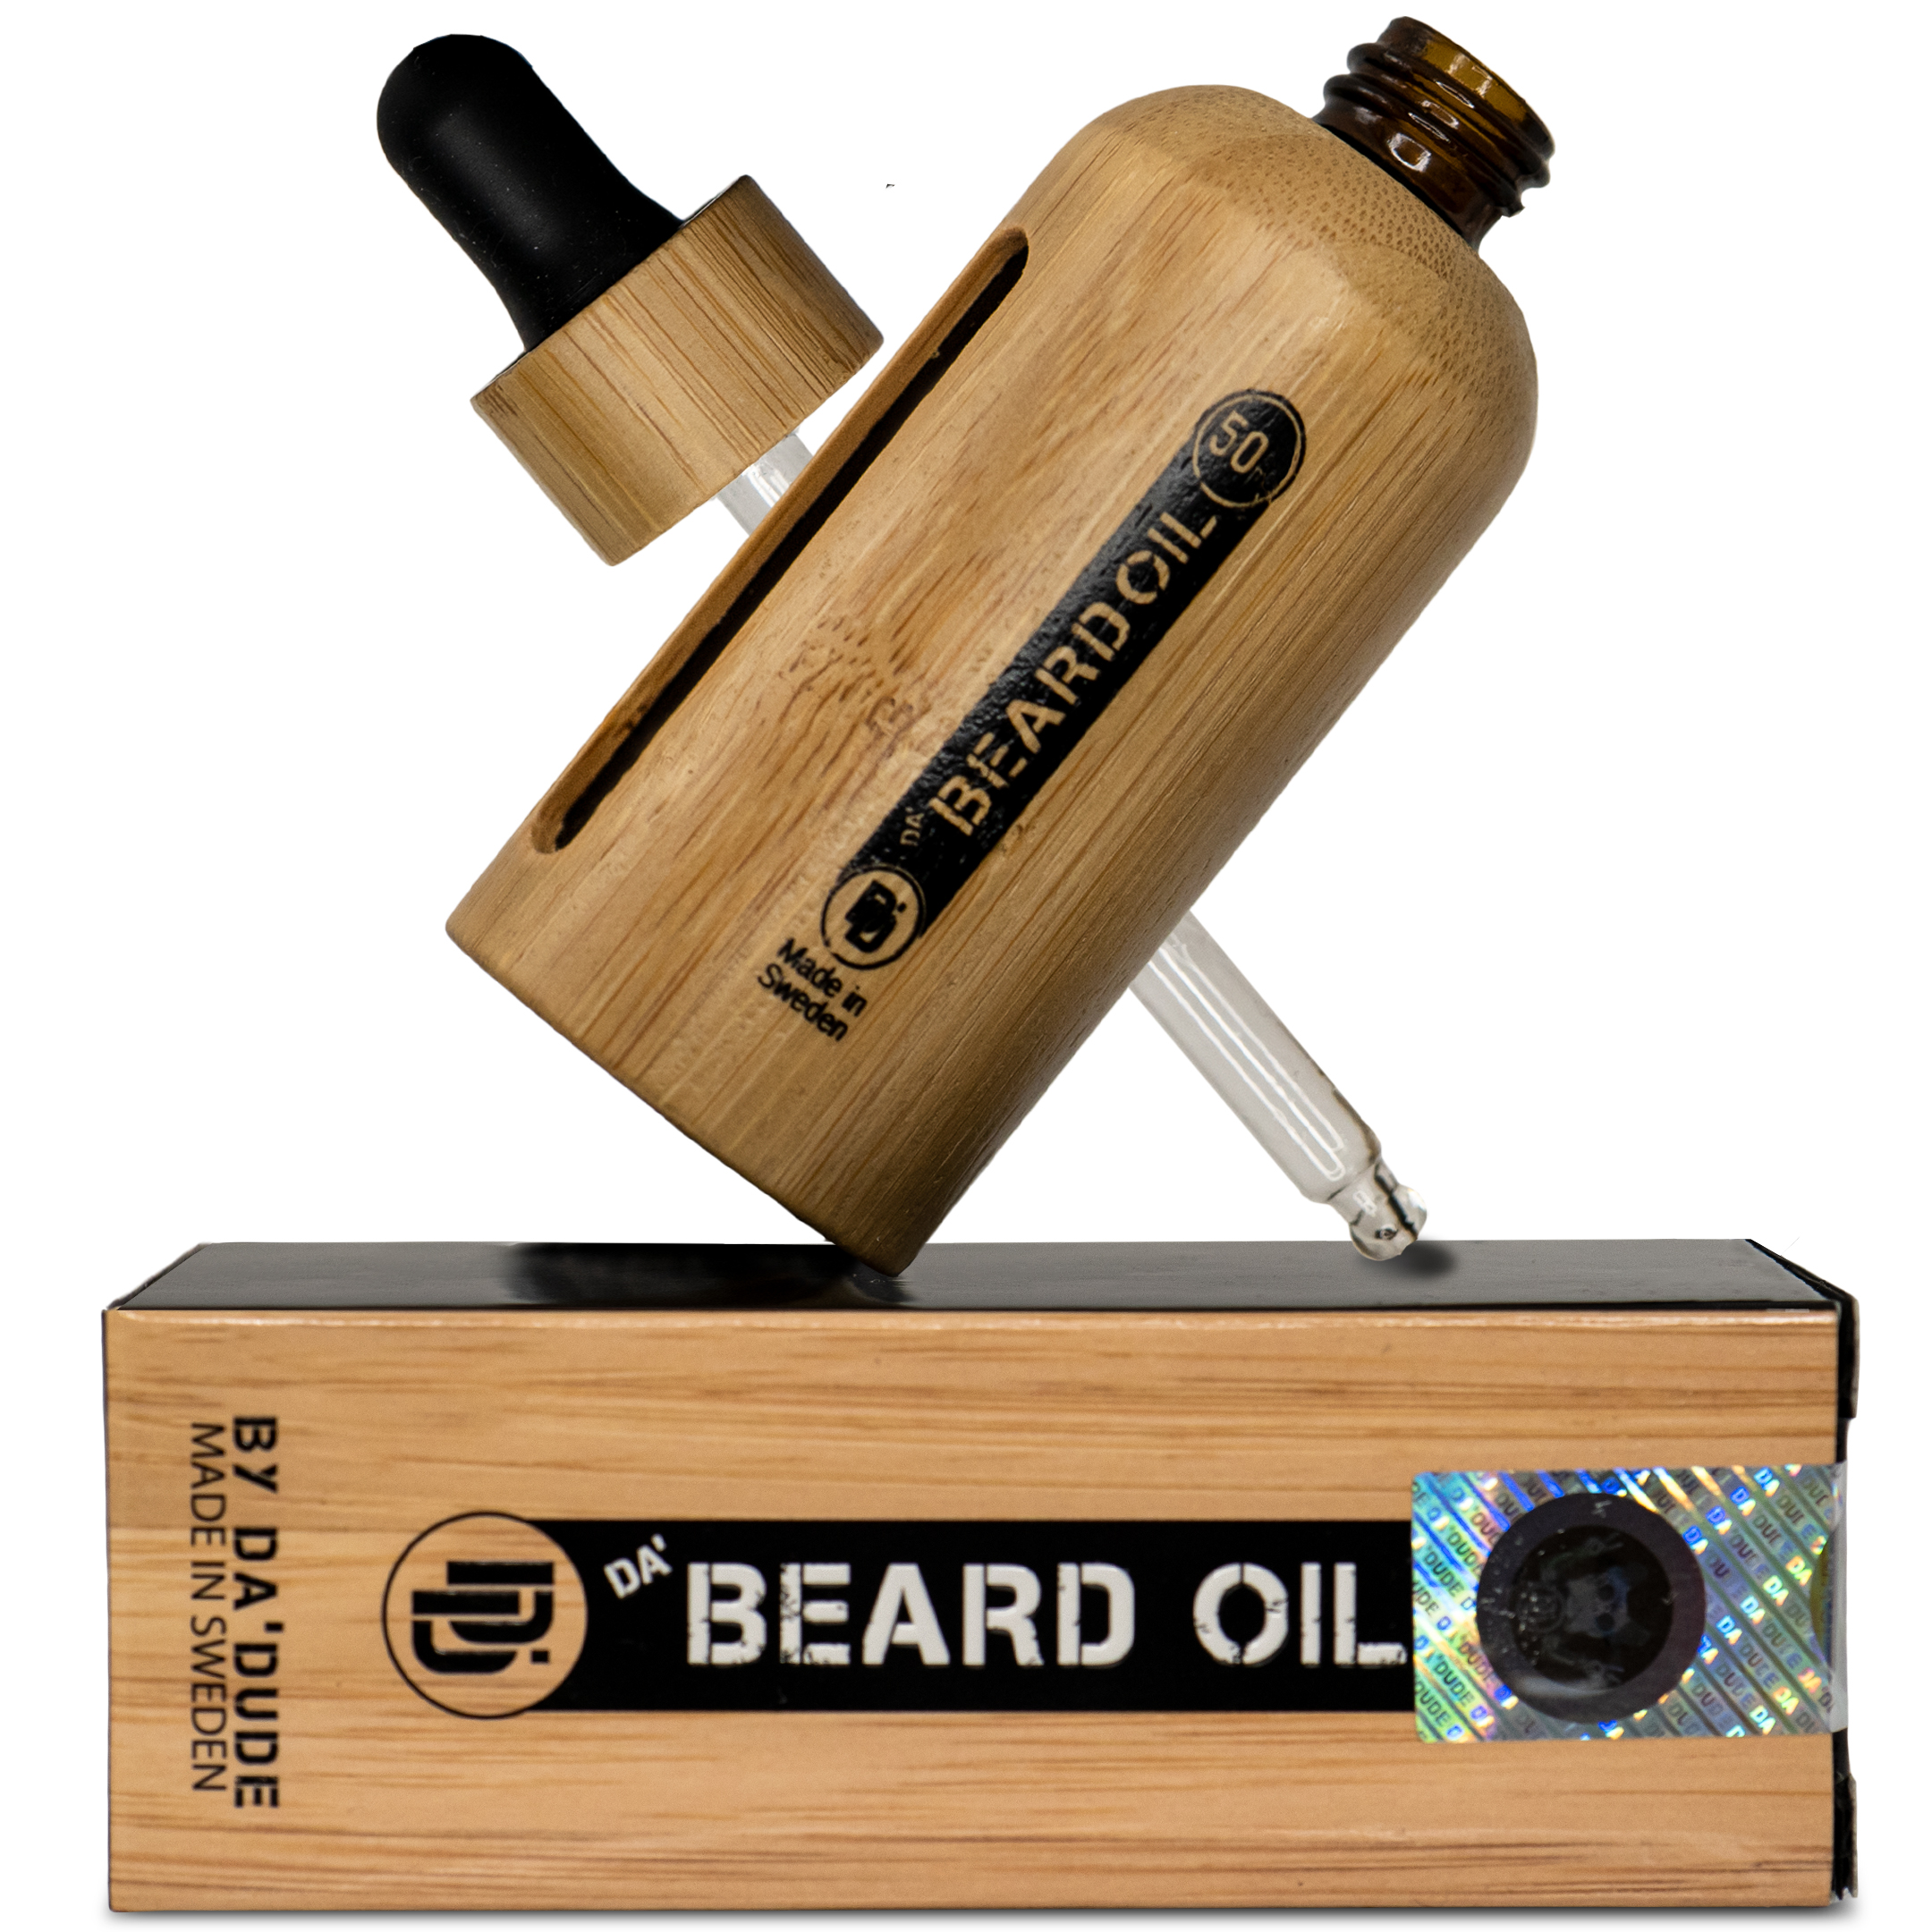 Da'Beard Oil